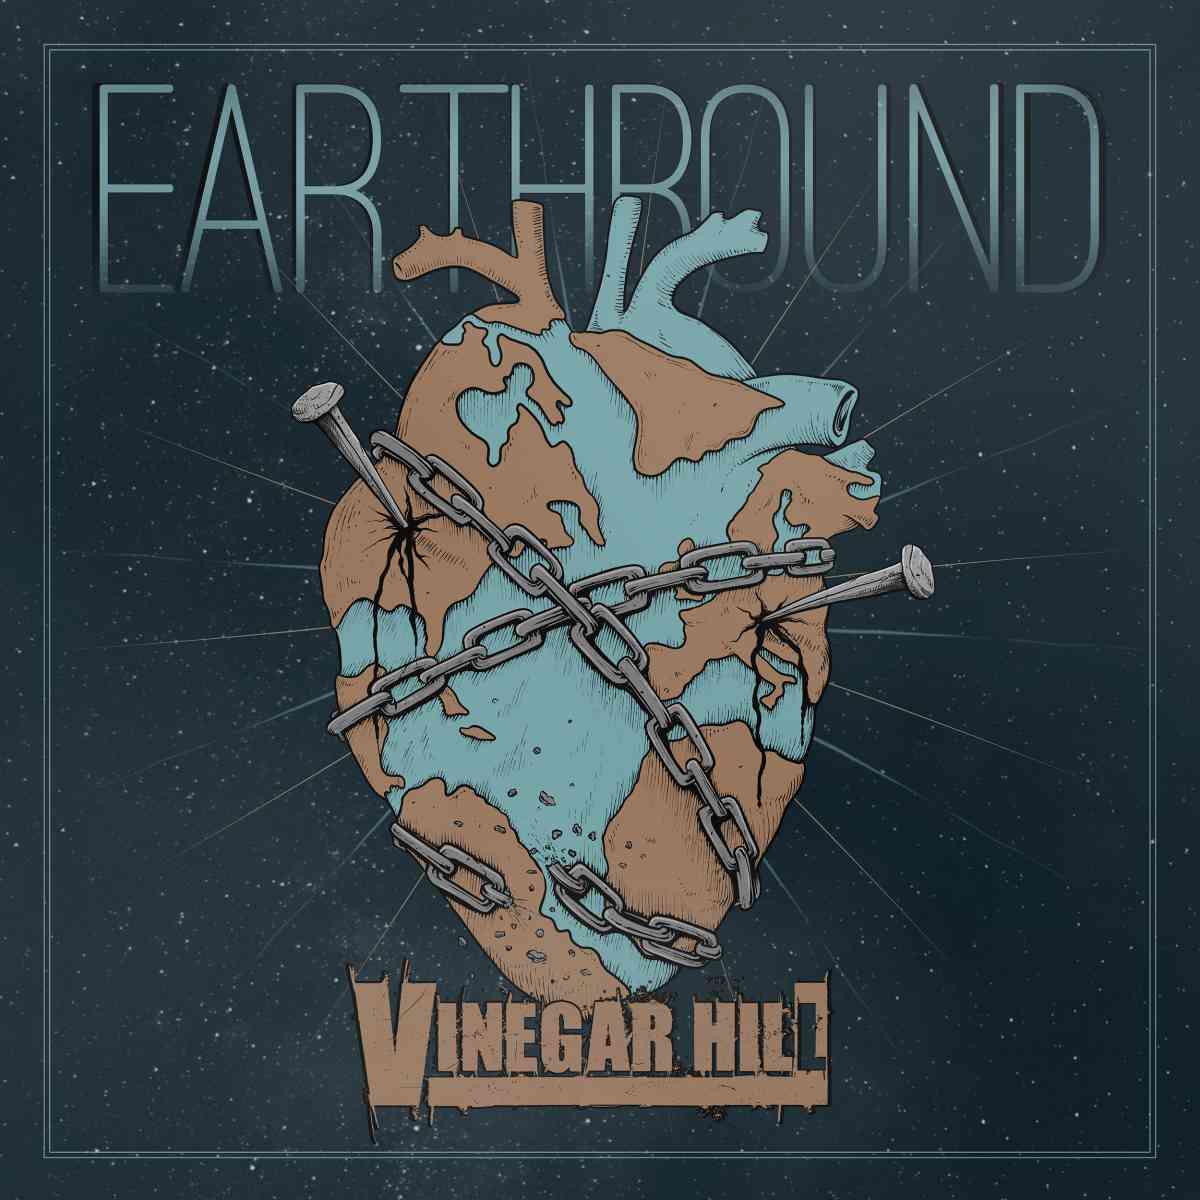 Vinegar Hill - Earthbound - album cover